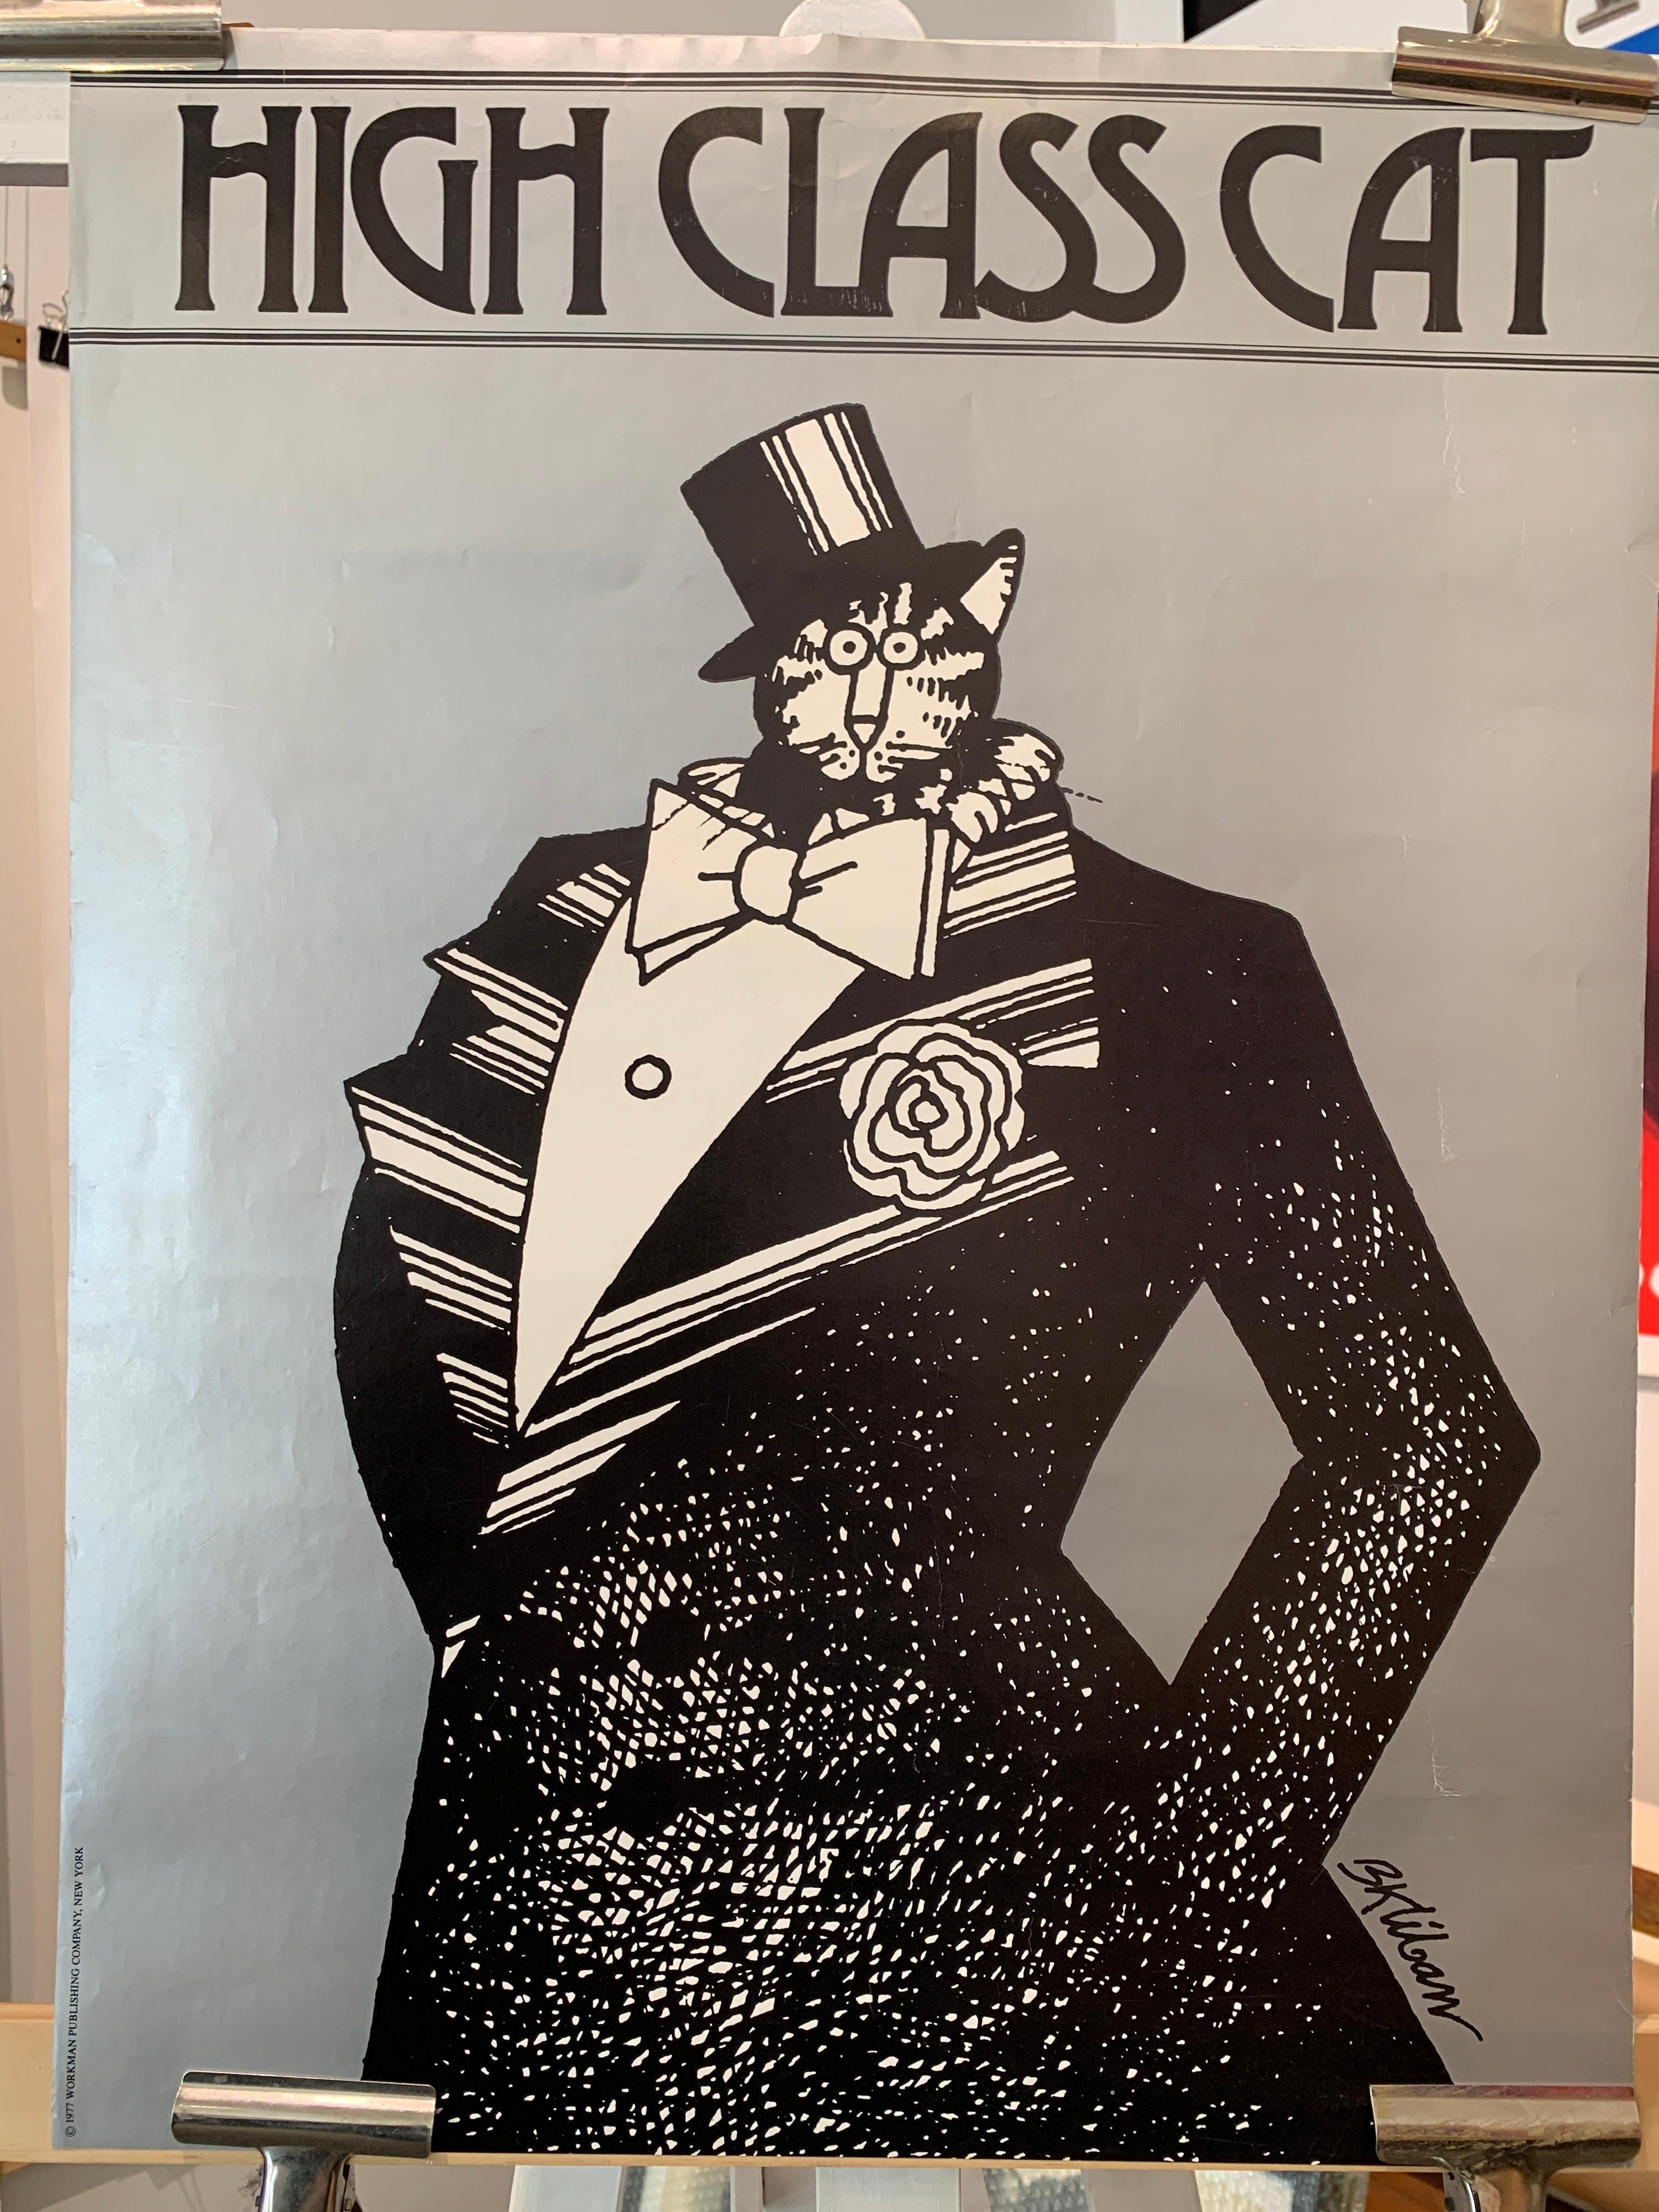 „High Class Cat“, Original-Vintage-Poster von BK LIBAN, 1977

Es handelt sich um ein originales Vintage-Plakat von 1977, der Gesamtzustand ist gut.  Ein perfektes Poster für jeden Katzenliebhaber! Das Papier hat einen leichten